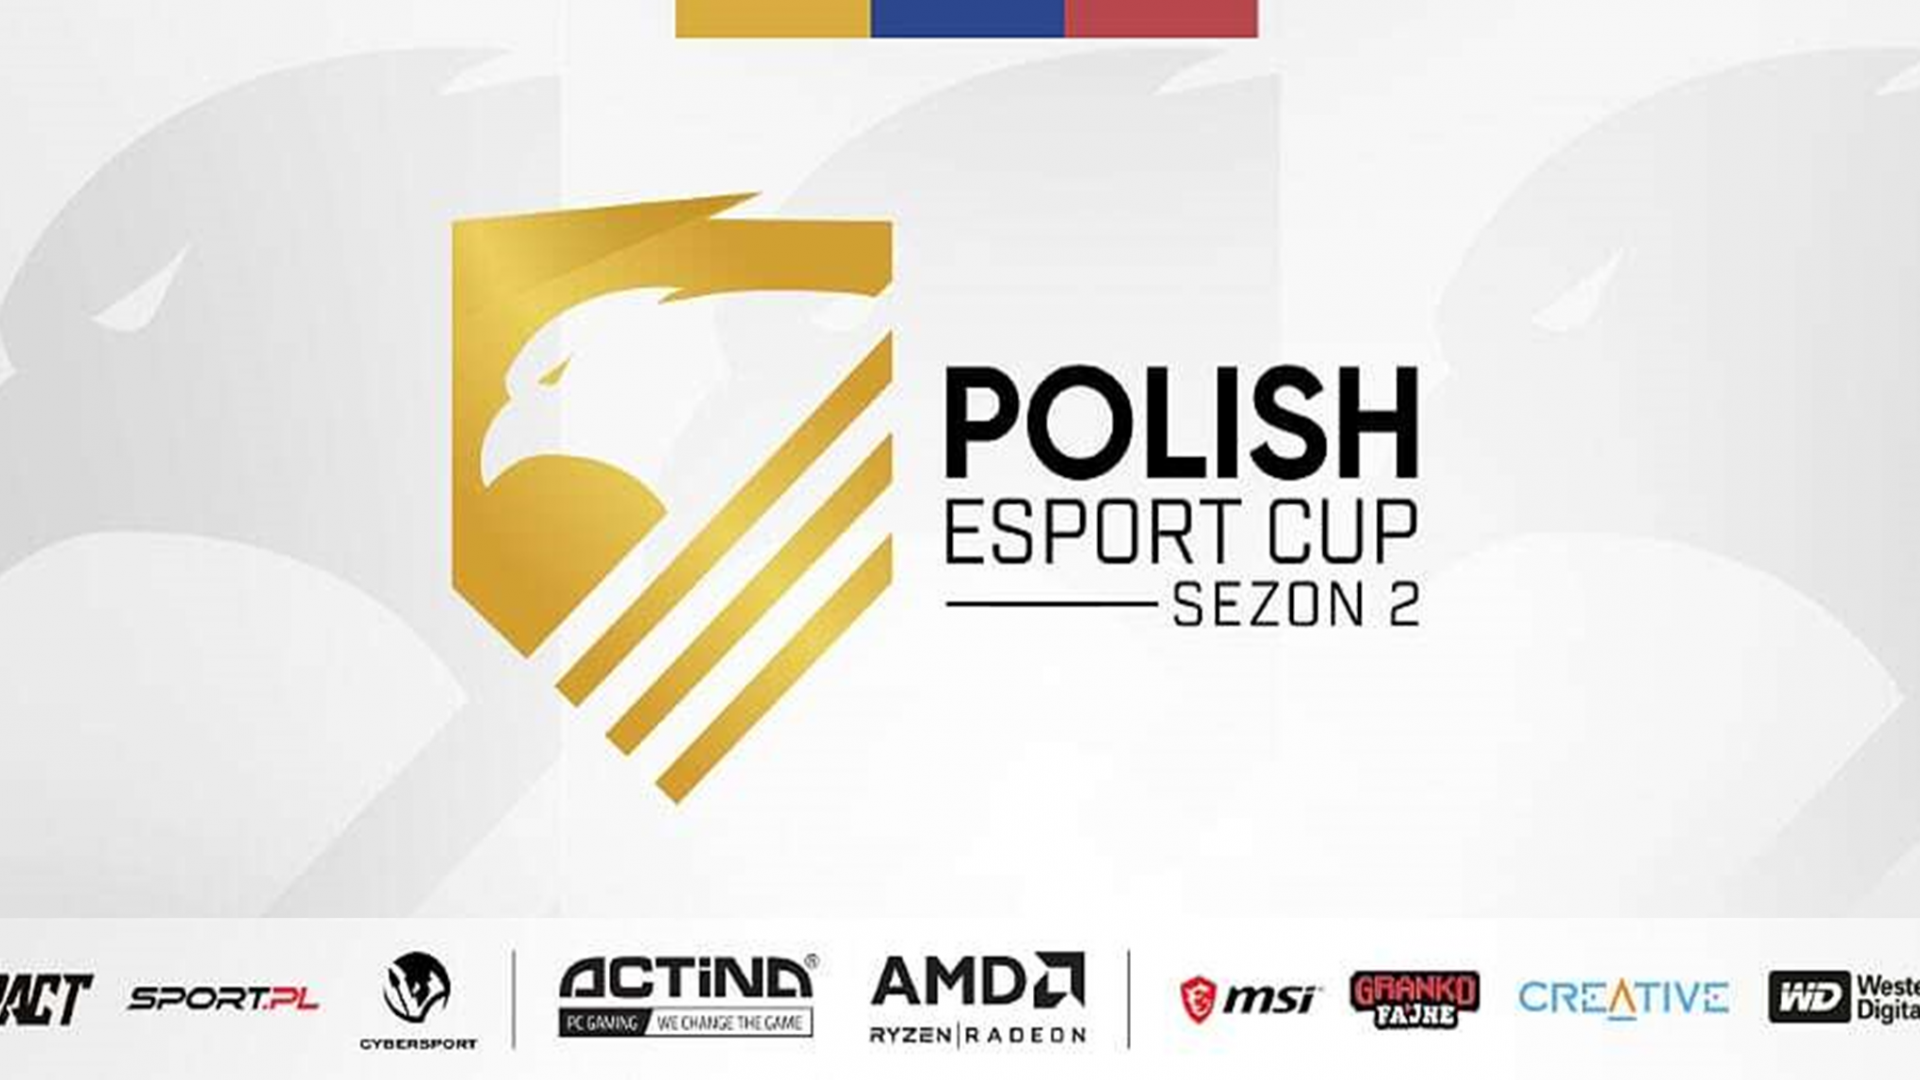 Gracze wracają do rywalizacji! Sport.pl po raz drugi współorganizuje POLISH ESPORT CUP 2020